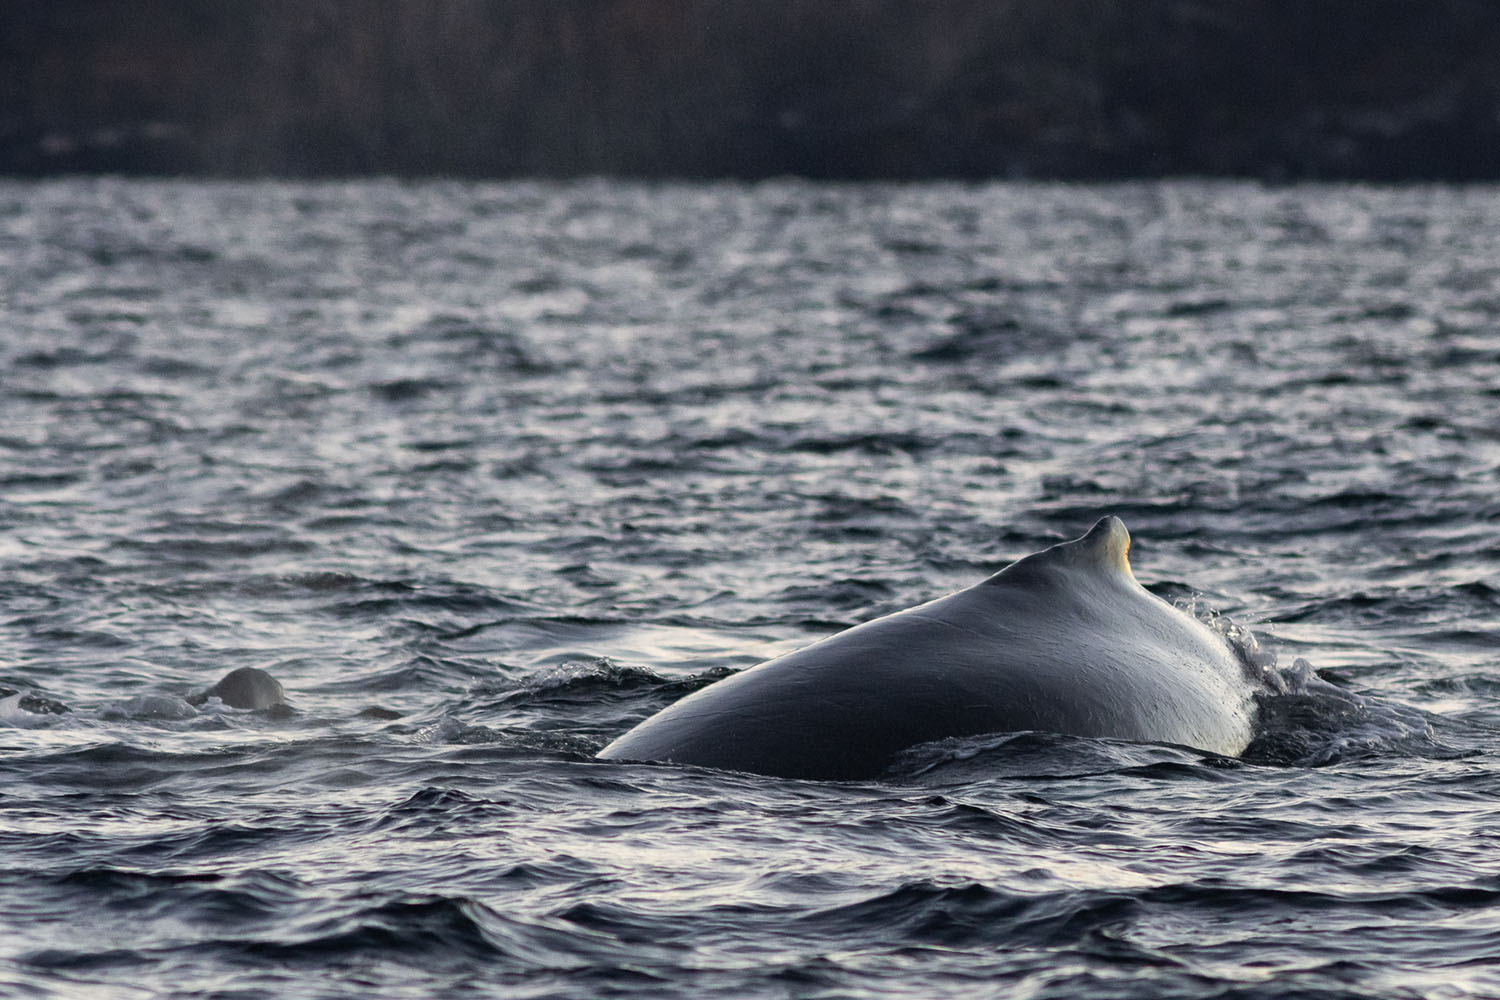 voyage scientifique - orques et baleines a bosse de norvege 43